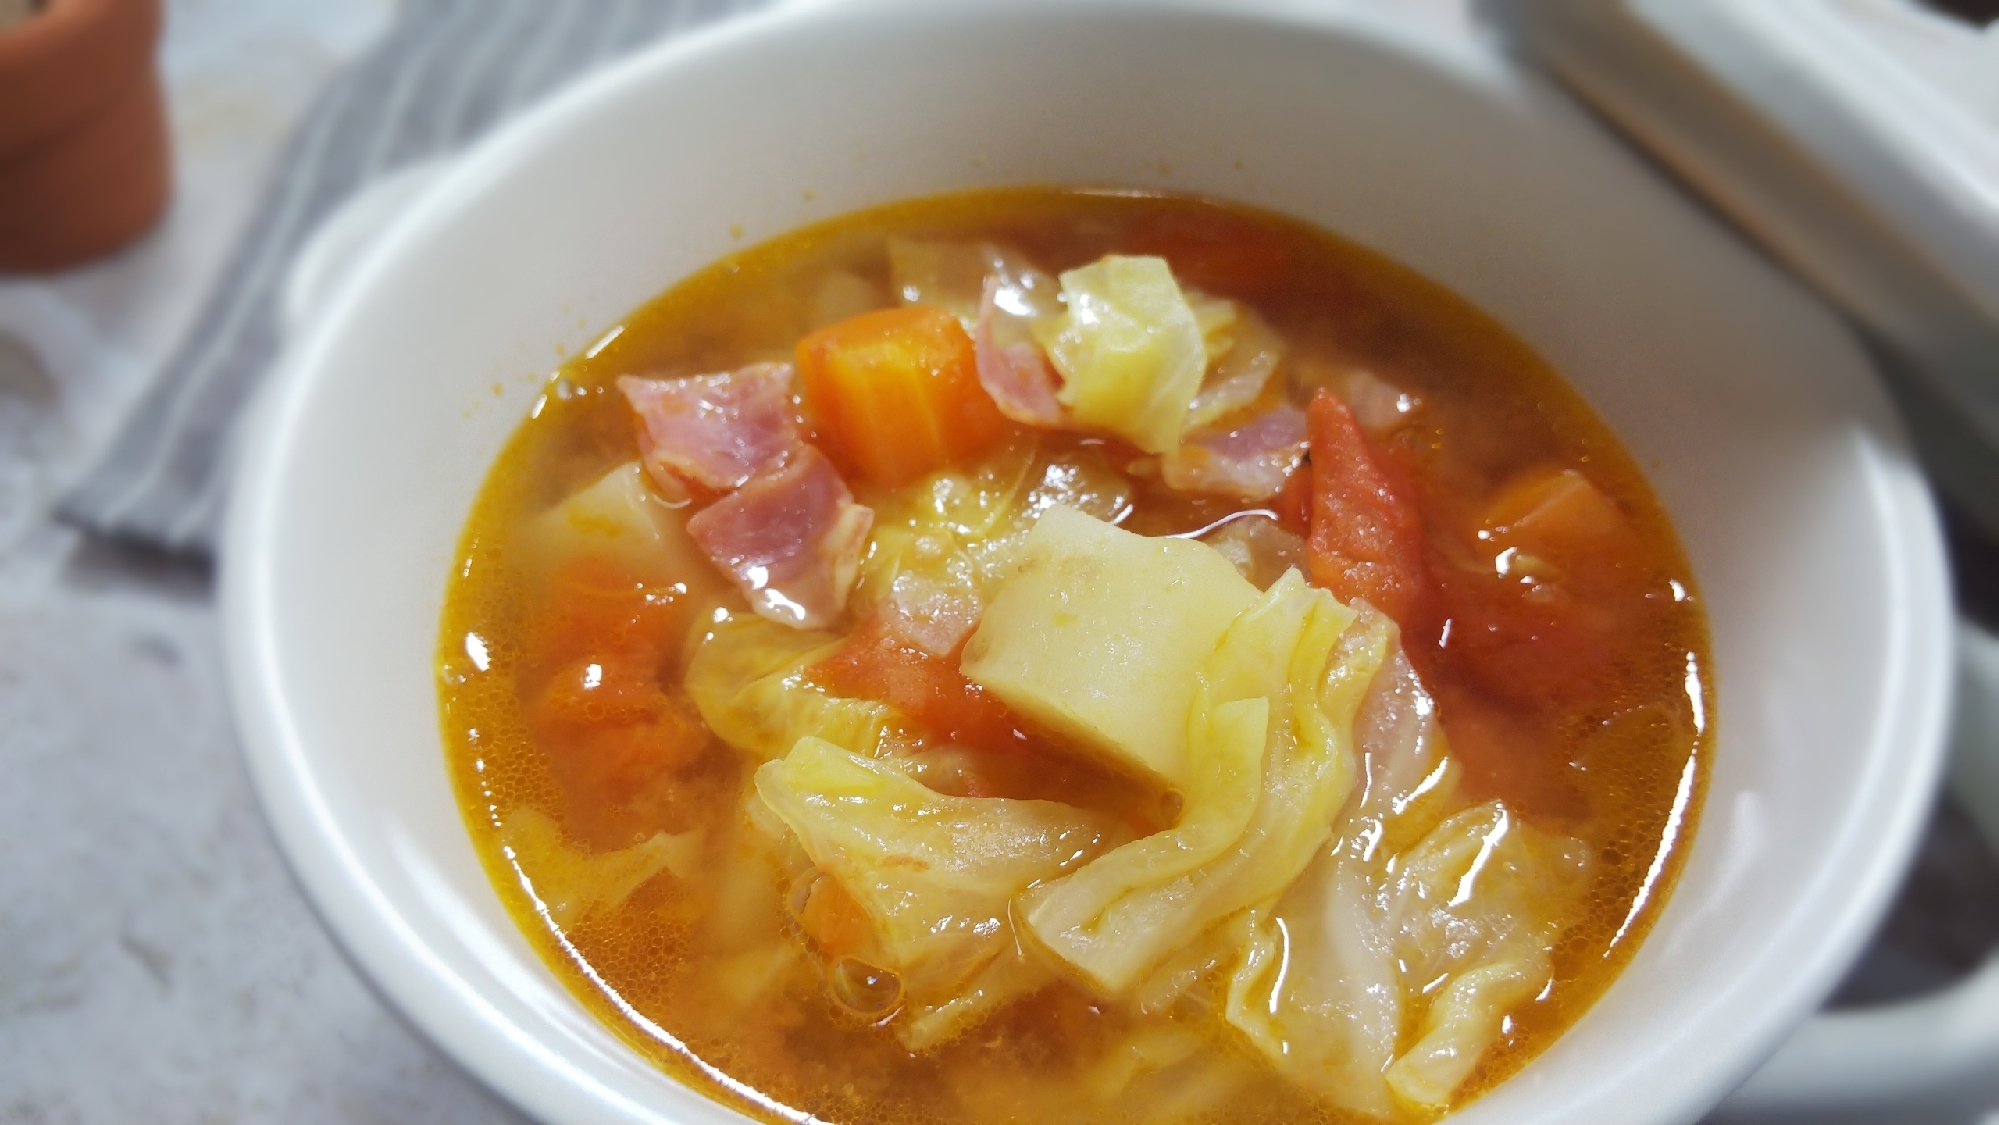 野菜スープ*フレッシュトマトで無水 電気圧力鍋3分